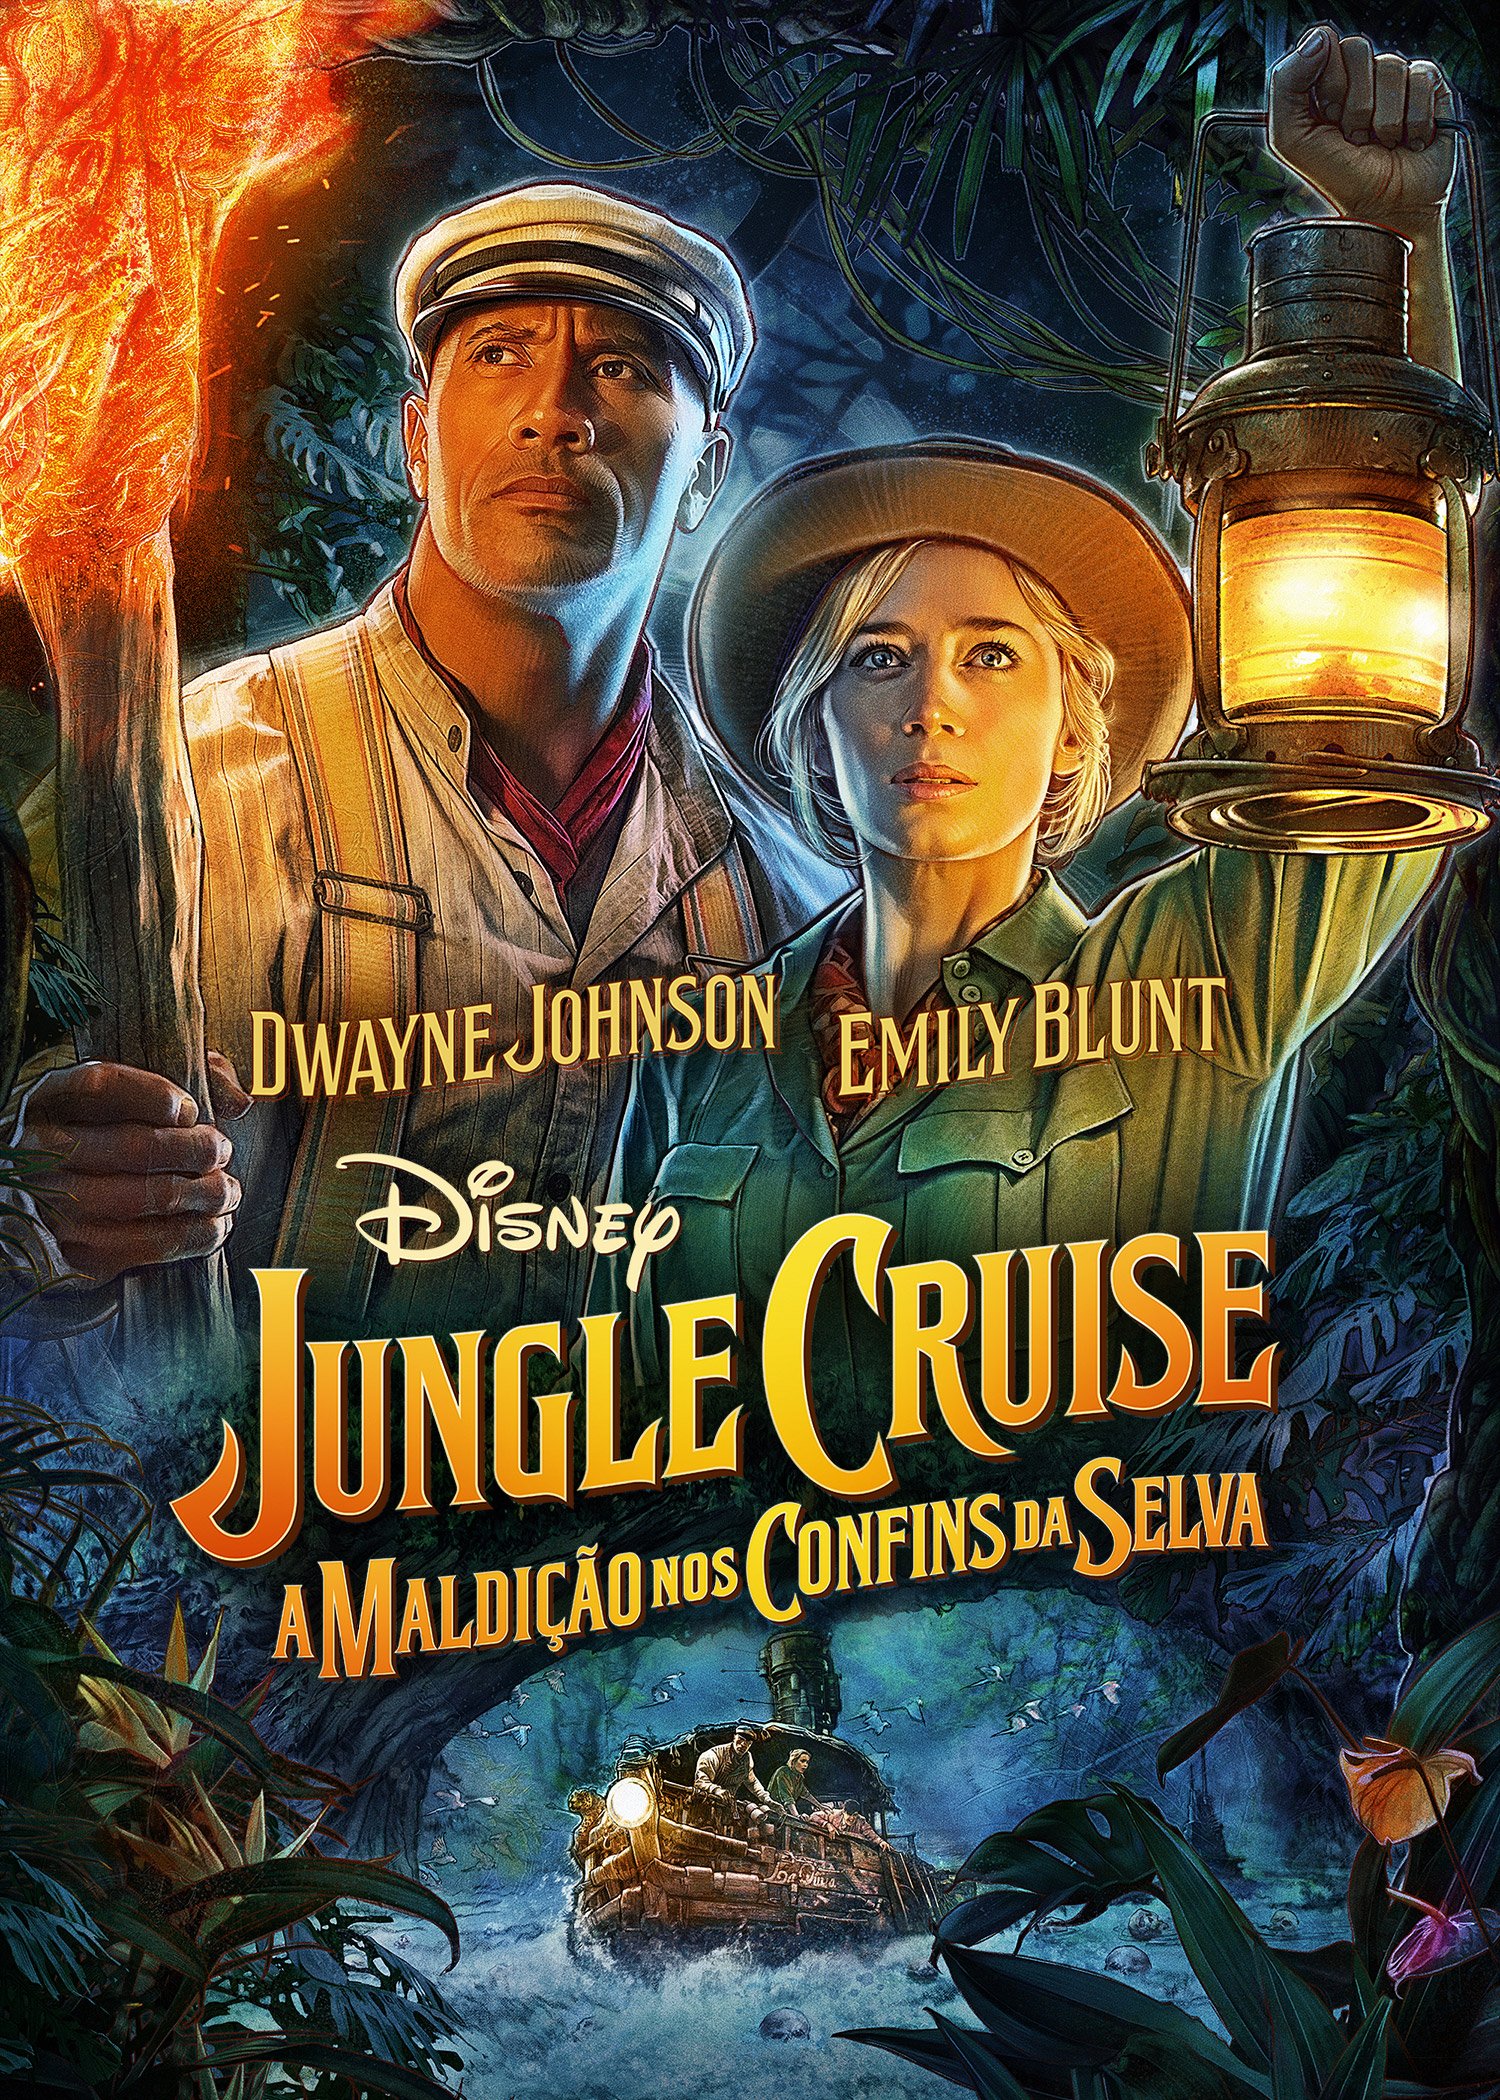 Jungle Cruise: A Maldição nos Confins da Selva